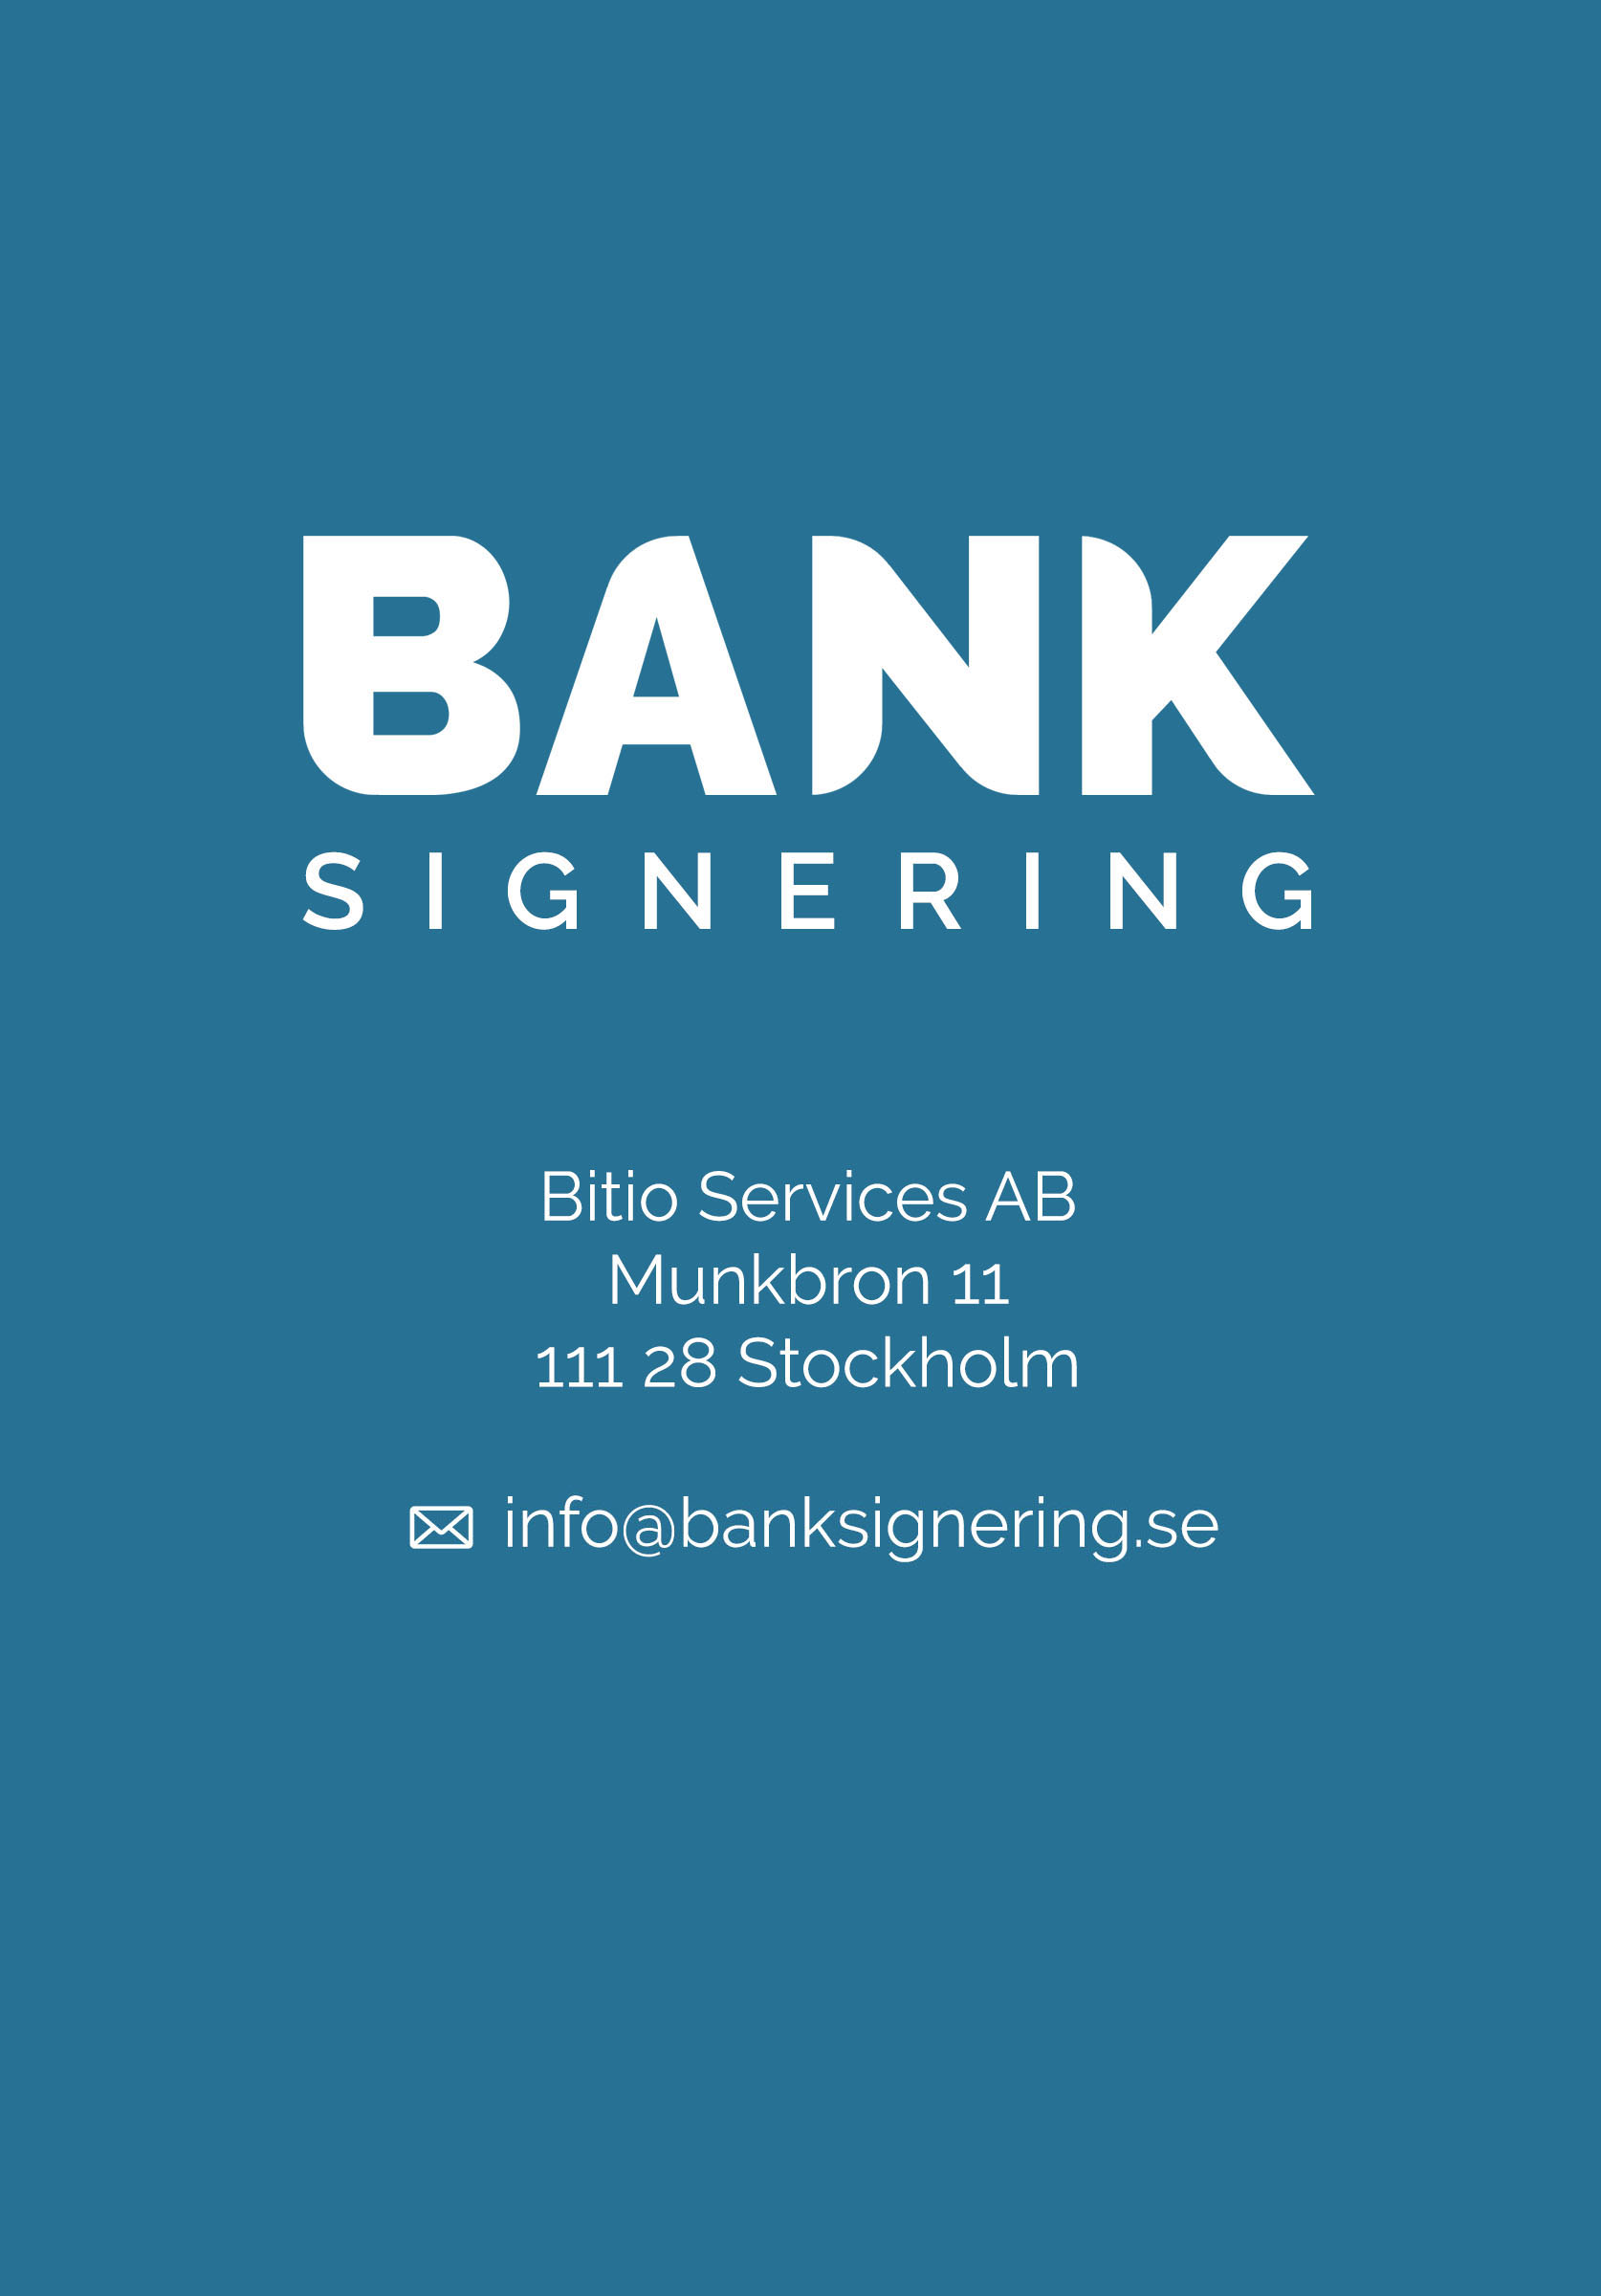 BankSignering. Intresserad? Kontakta erik.hertsius@banksignering.se eller ring 073 669 55 88